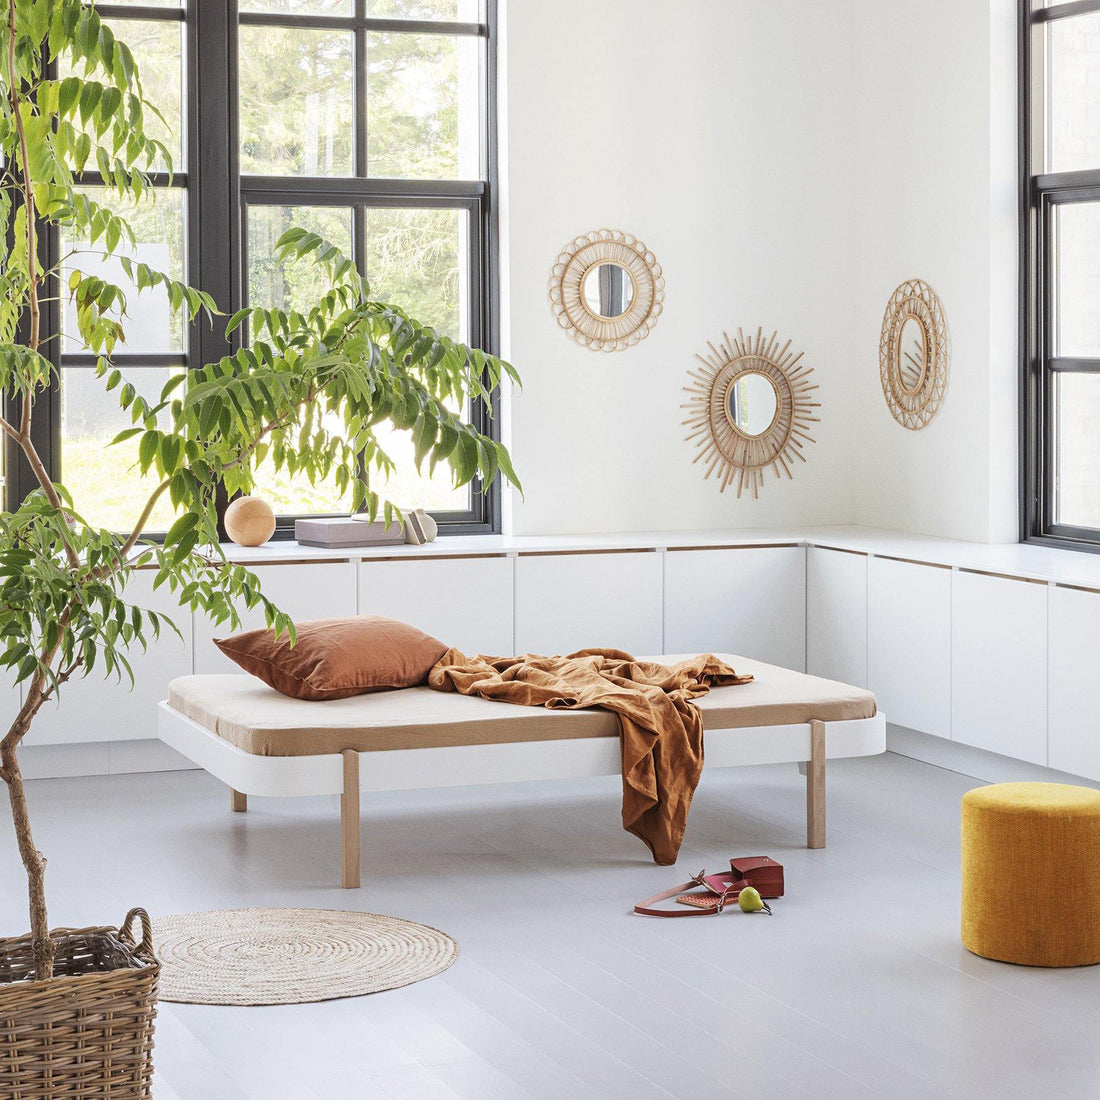 oliver-furniture-wood-lounger-bed-120-white-oak- (3)